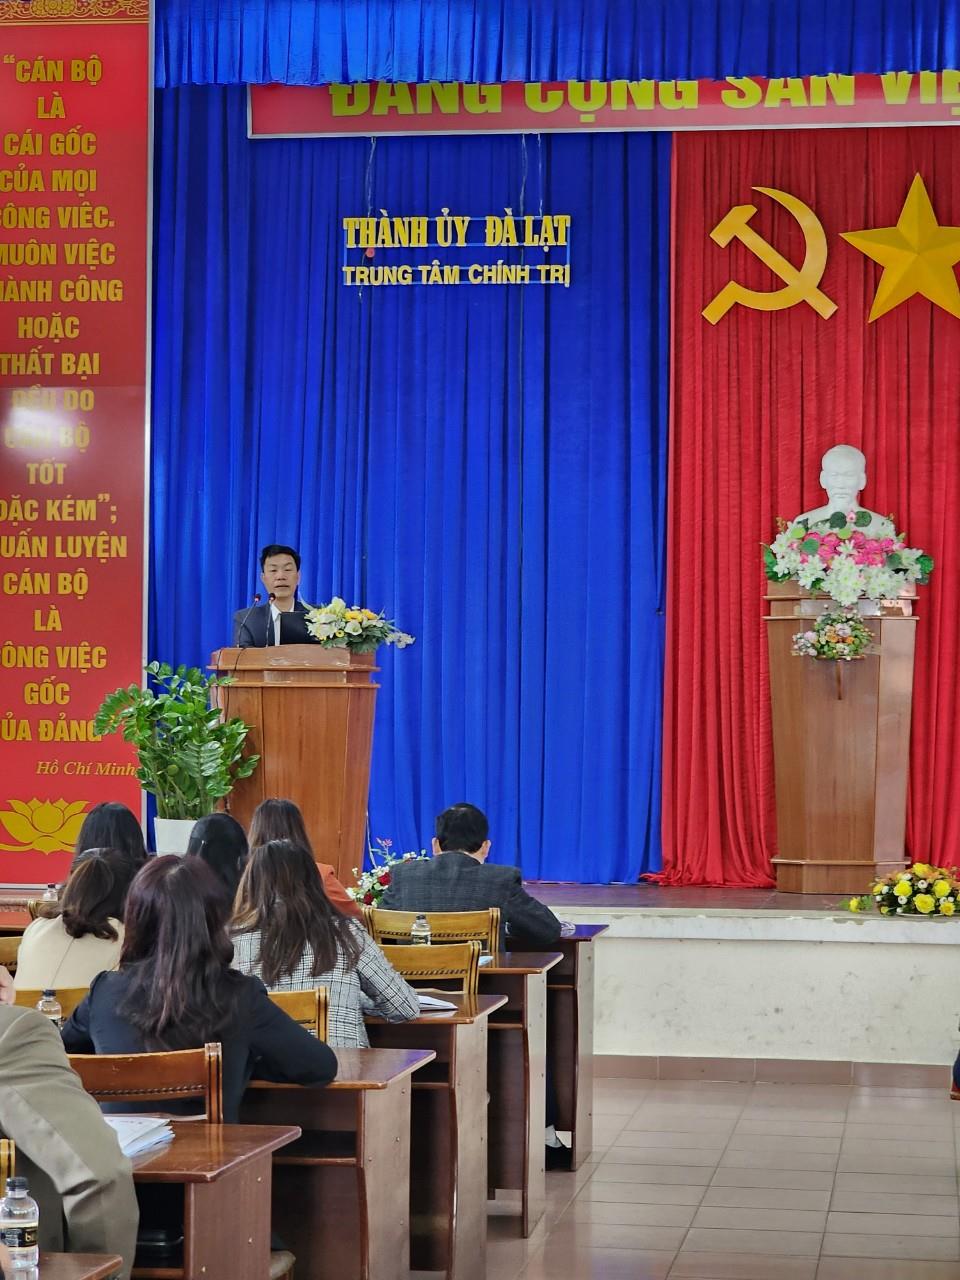 Đồng chí Nguyễn Văn Thu - Trưởng phòng xây dựng chính quyền, Sở Nội vụ Tỉnh Lâm Đồng